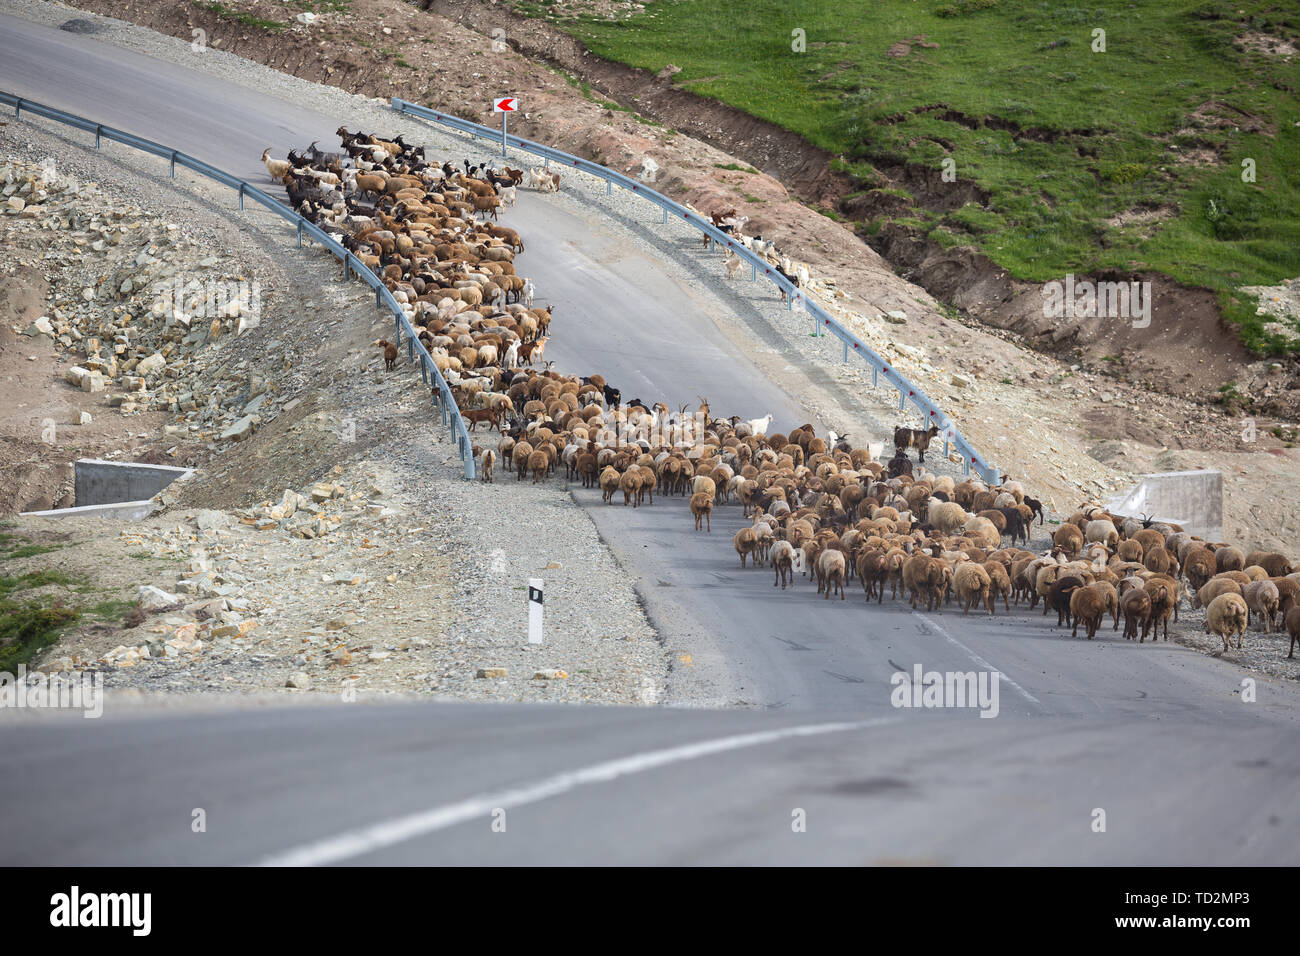 Un troupeau de moutons mangent de l'herbe dans les vertes collines du haut Caucase près de Chemakha, Azerbaïdjan. Banque D'Images